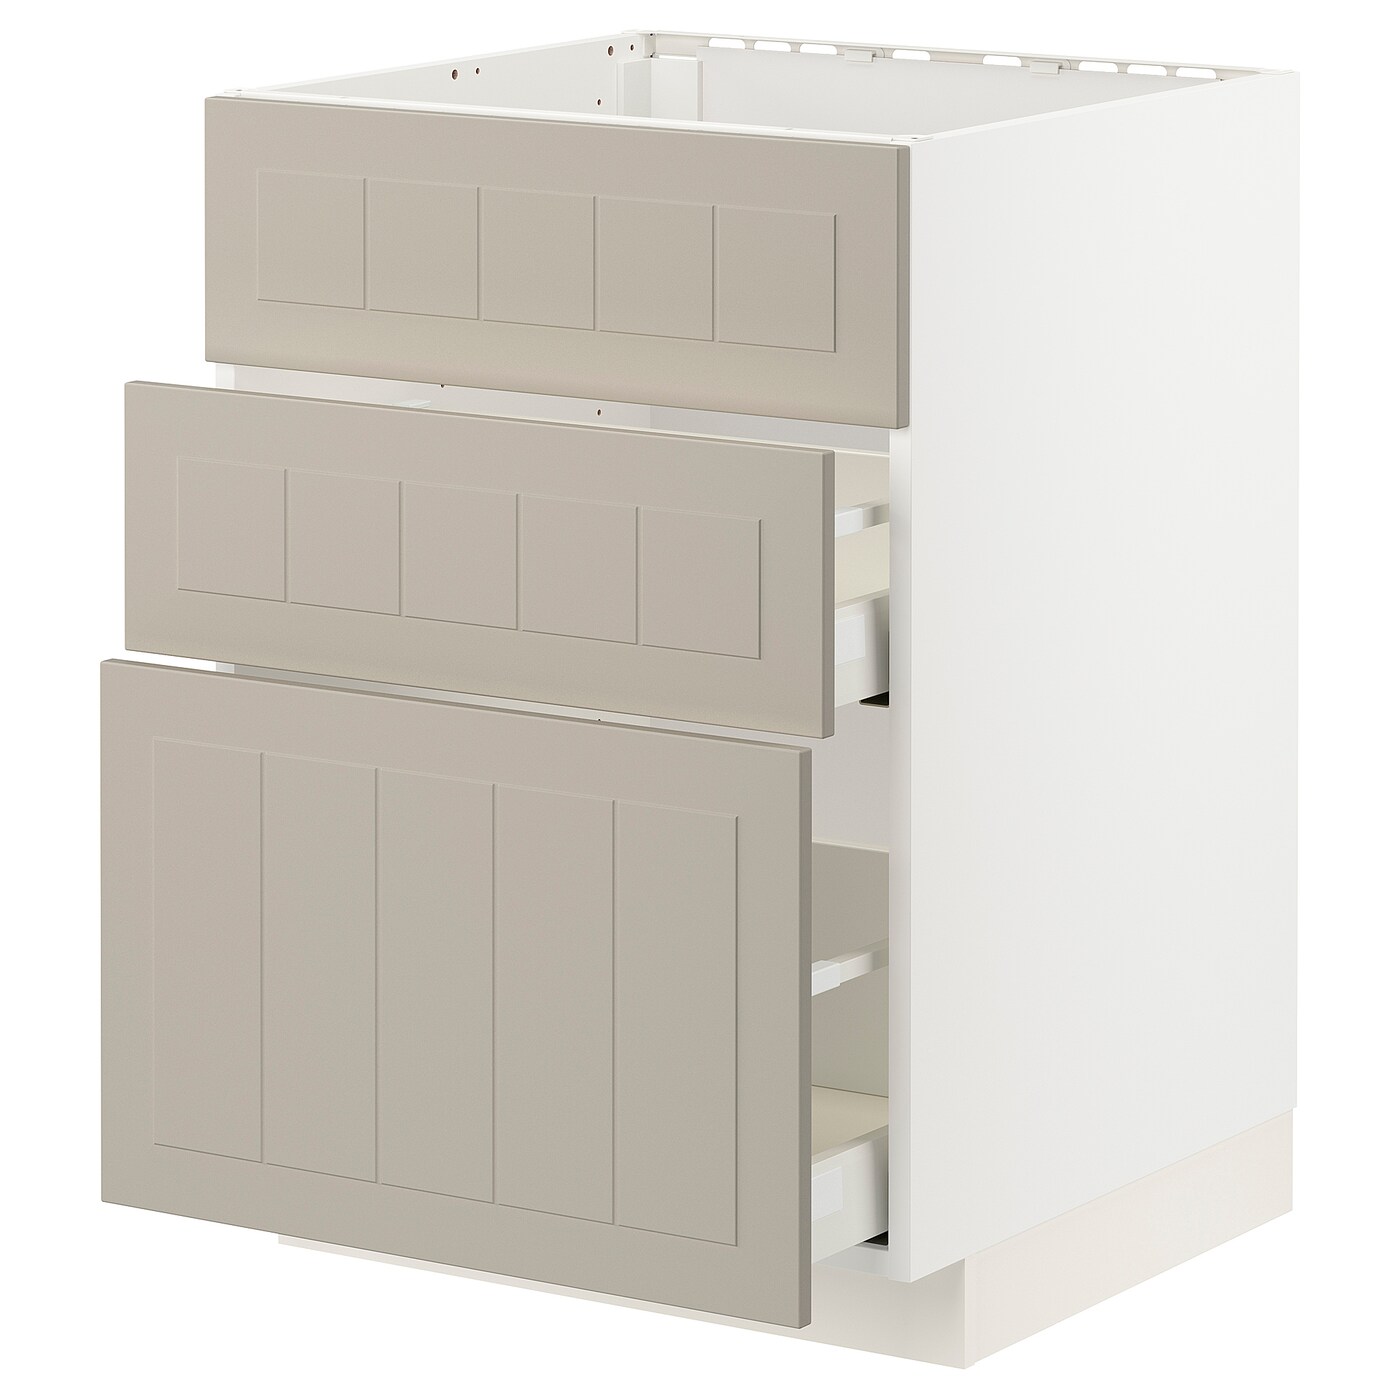 Напольный кухонный шкаф  - IKEA METOD MAXIMERA, 88x61,9x60см, белый, бежевыйМЕТОД МАКСИМЕРА ИКЕА